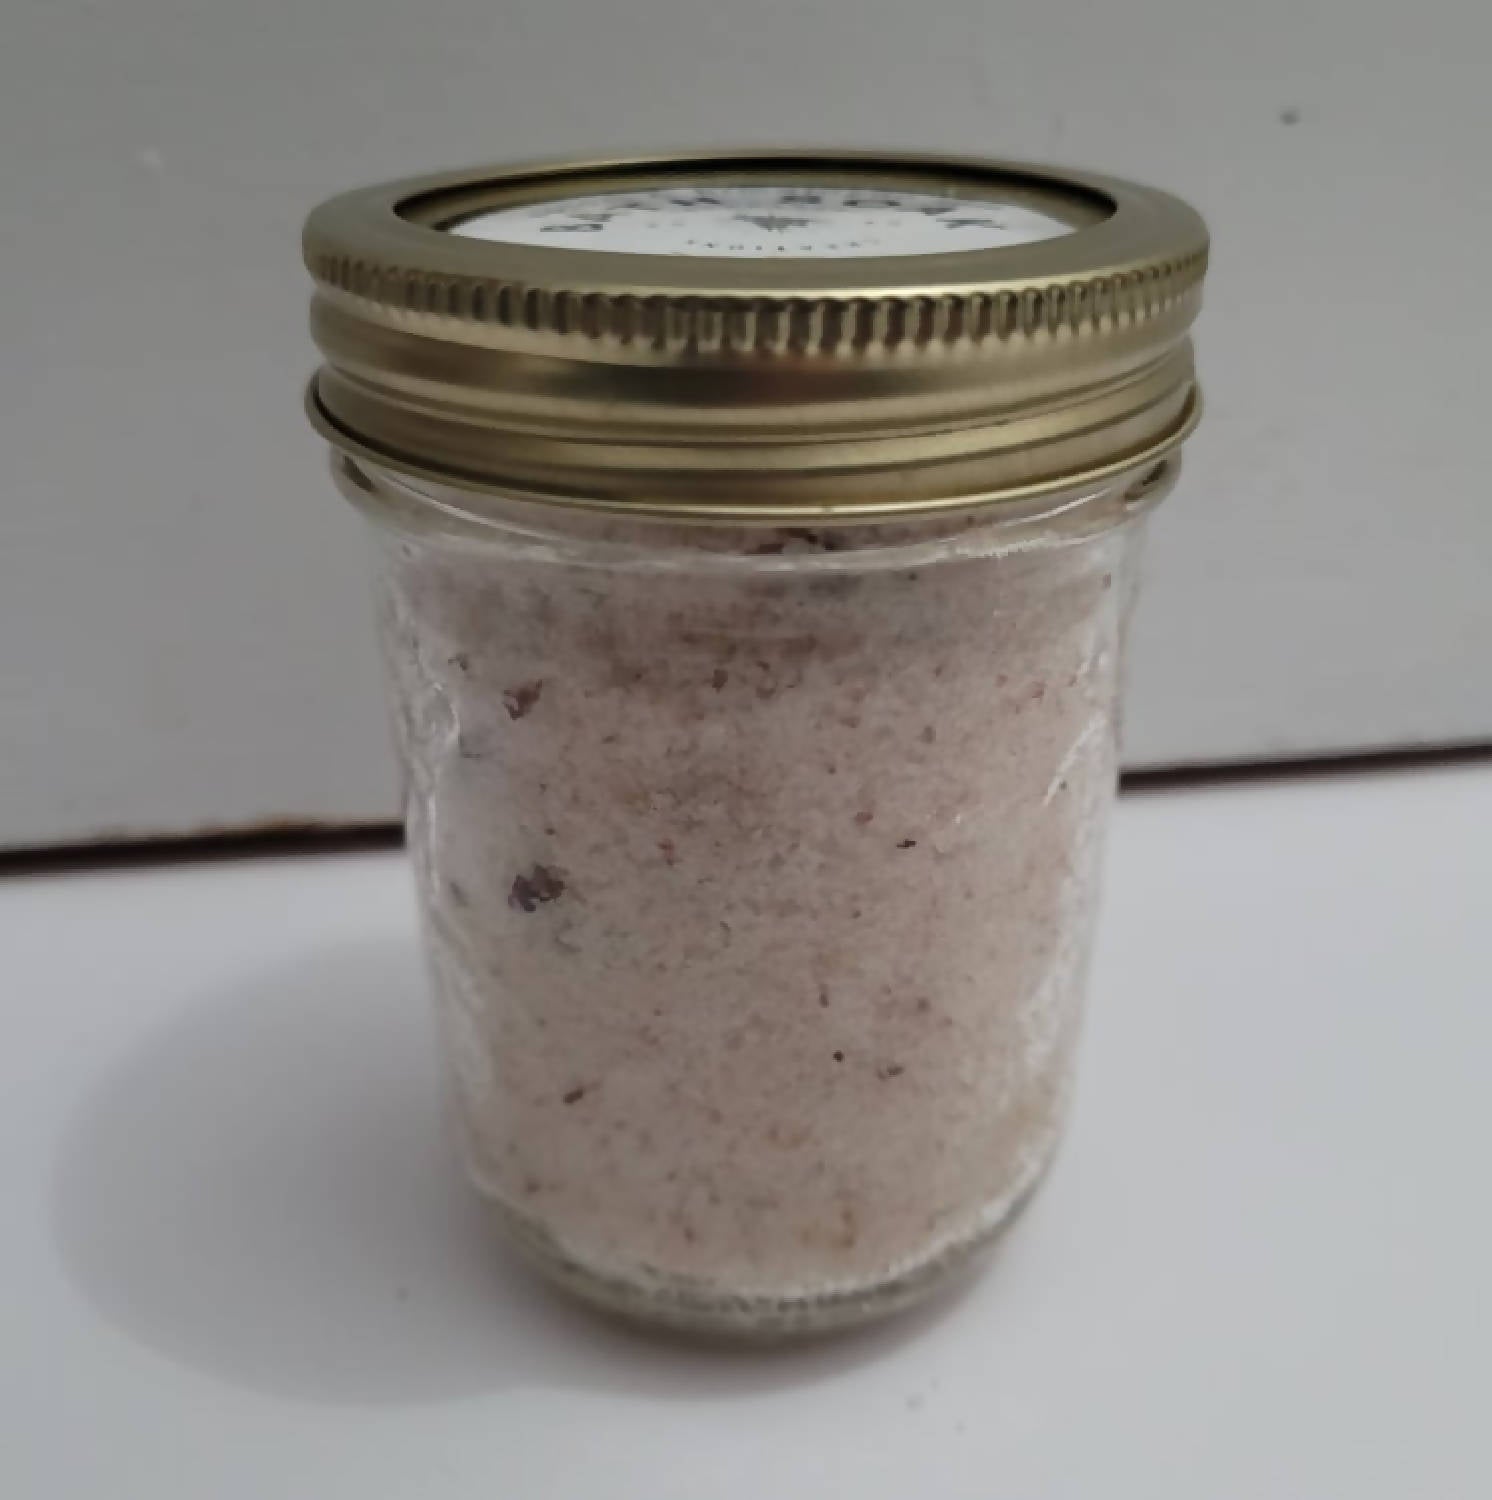 Epsom & Himalayan Salt Bath Soak